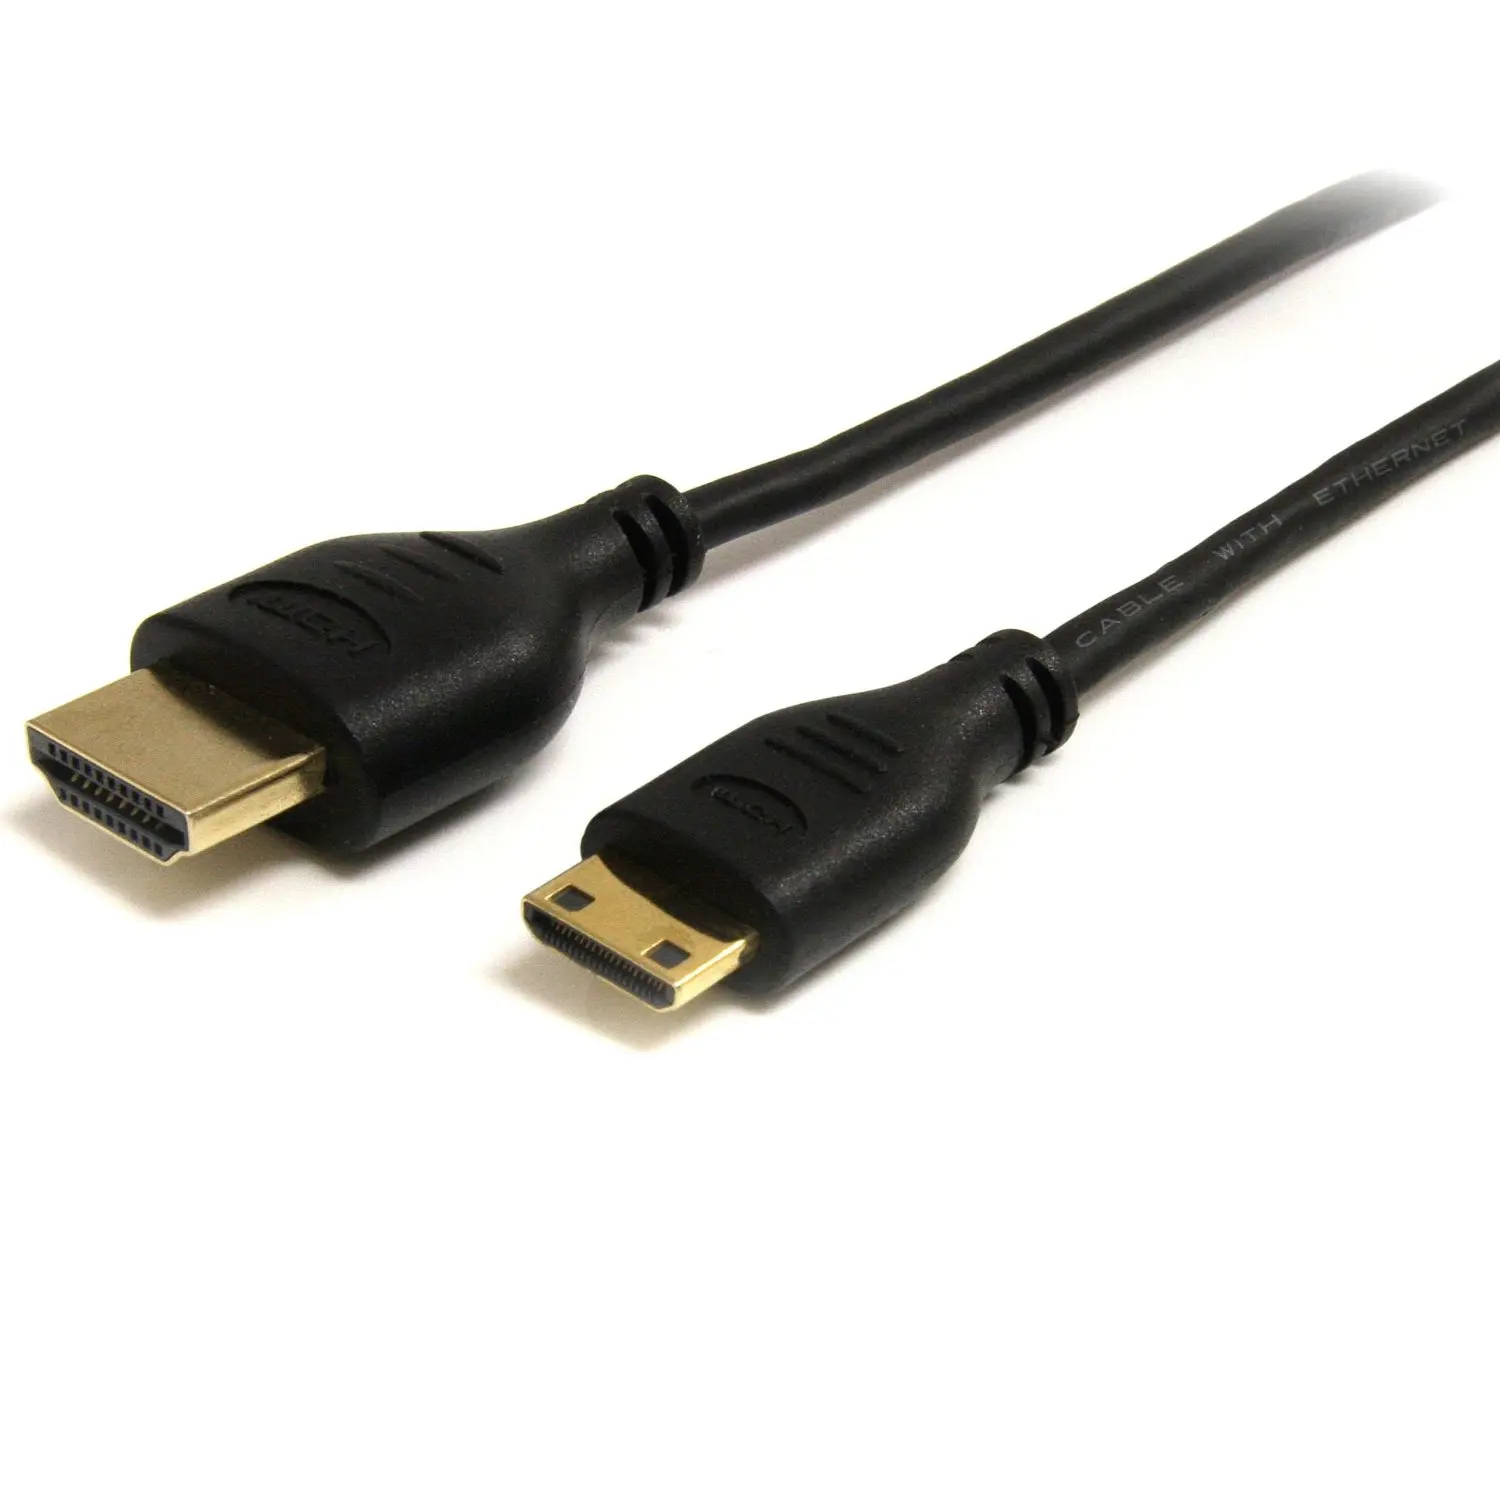 Hdmi кабель для домашнего кинотеатра. Кабель HDMI-MINIHDMI 1м. Кабель Sony HDMI-HDMI (2 метра) — фиолетовый. HDMI 1.5.